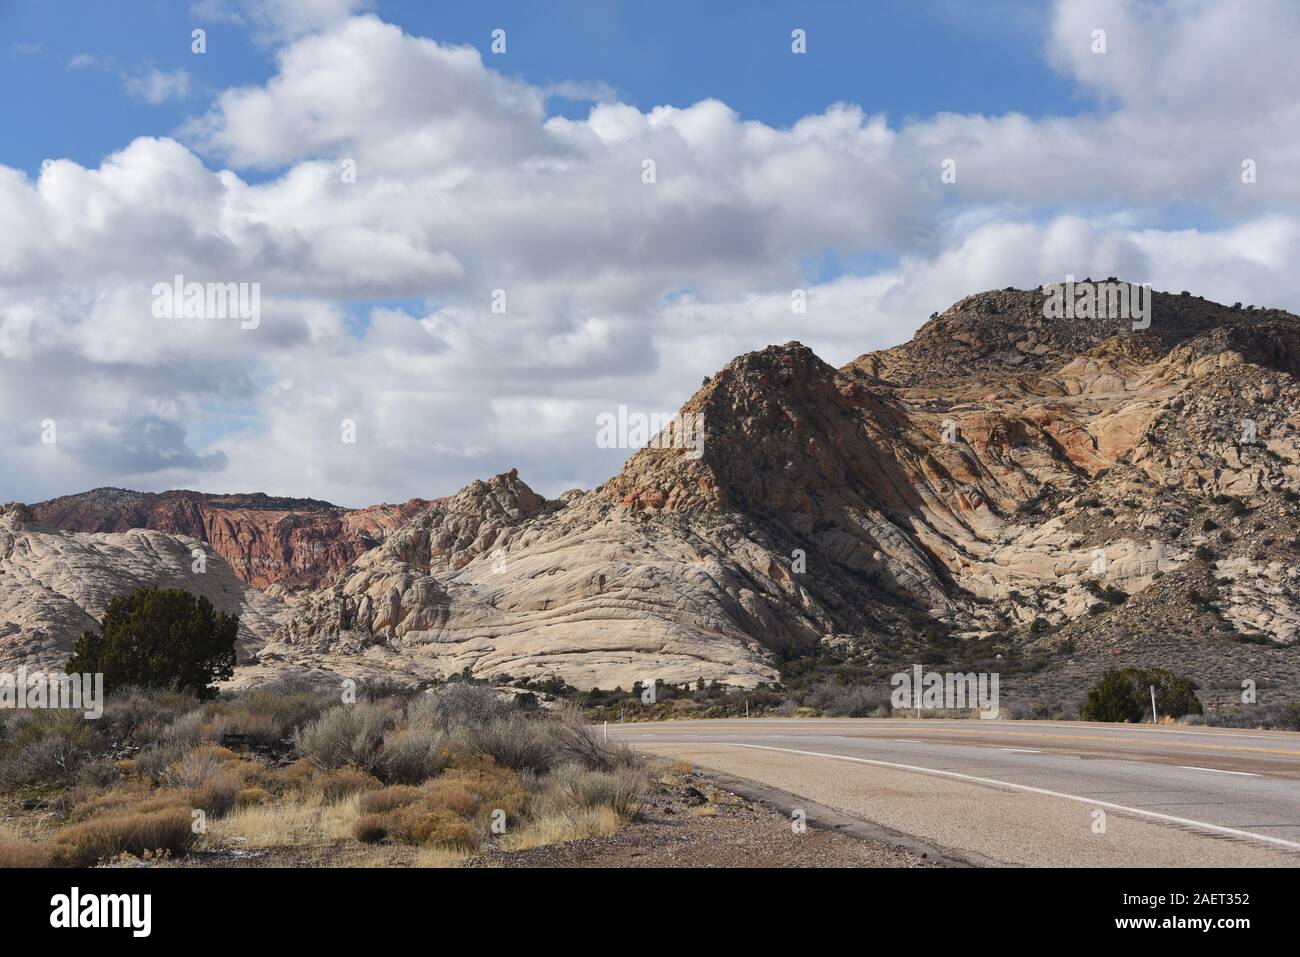 Paysage plein de pans de formations de roche volcanique dans les hautes montagnes du sud du désert de Mojave, Utah, USA Banque D'Images